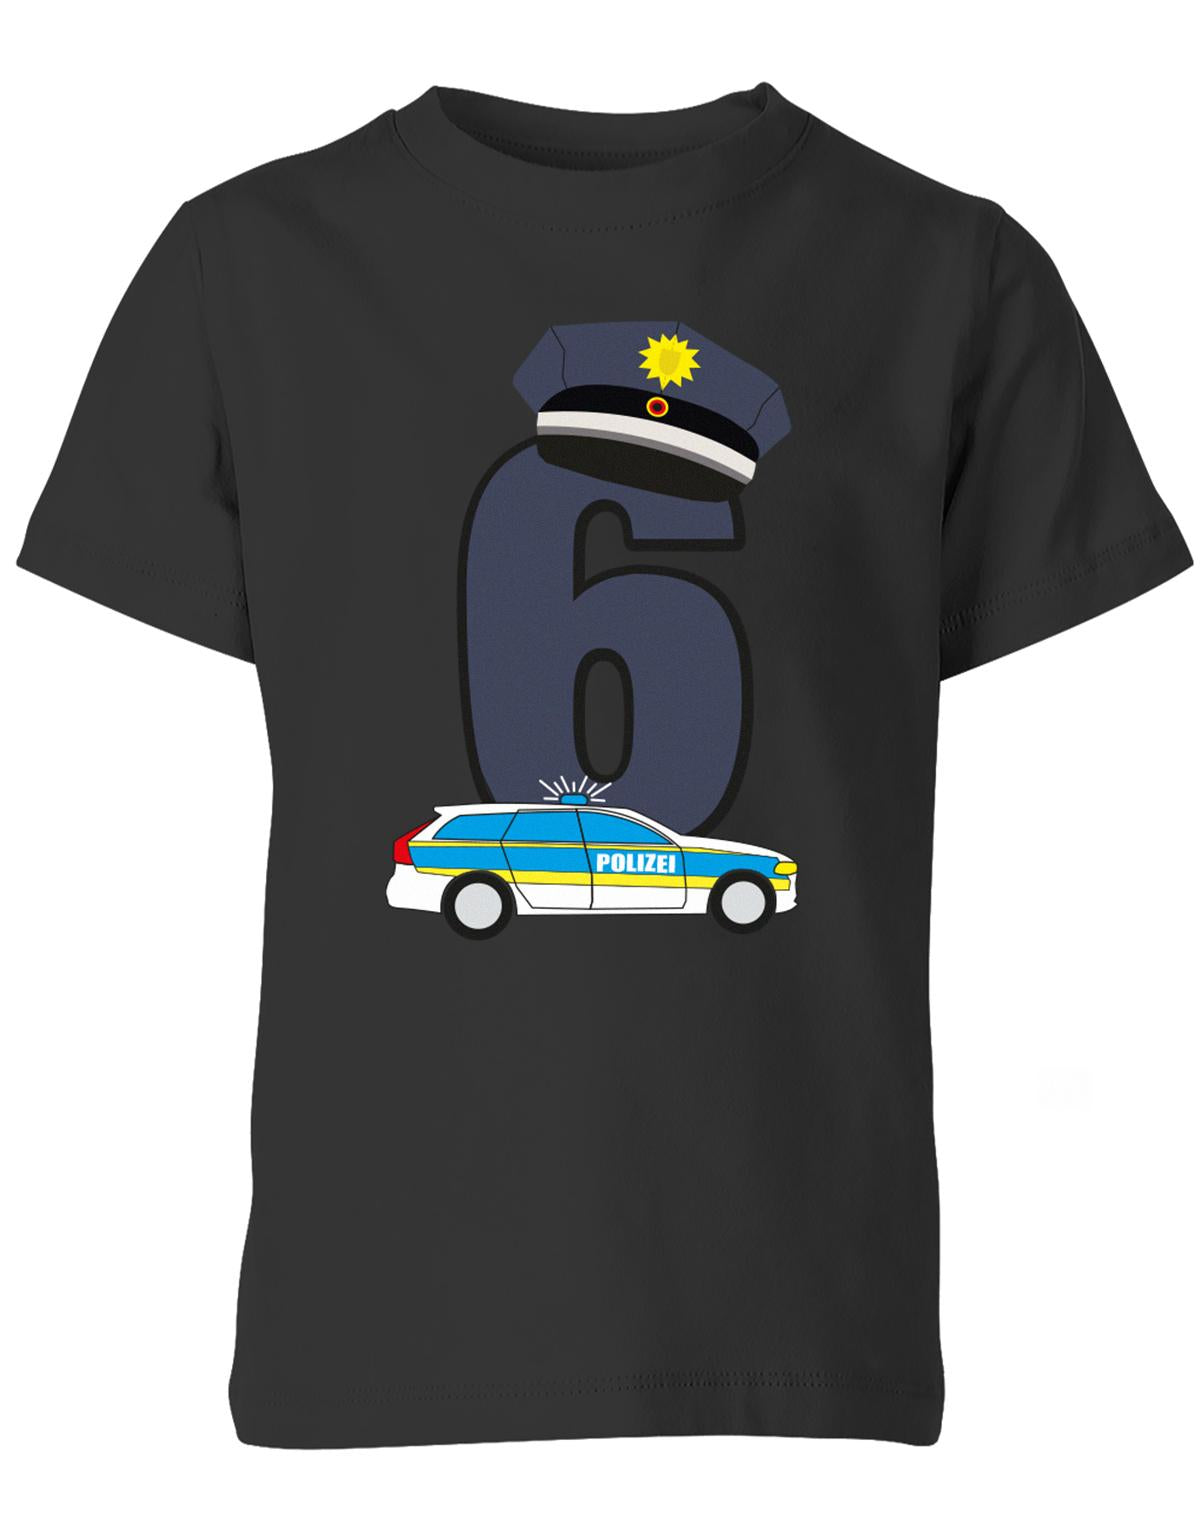 ich-bin-6-polizei-geburtstag-kinder-shirt-schwarz